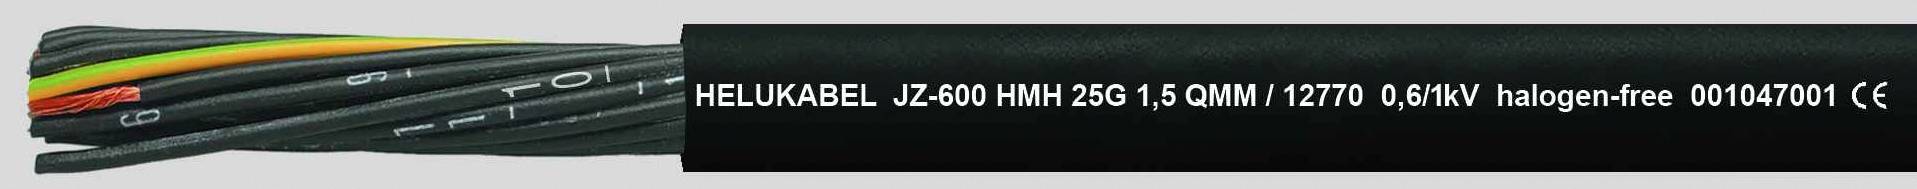 HELUKABEL JZ-600 HMH Steuerleitung 3 G 0.75 mm² Schwarz 12736-1000 1000 m